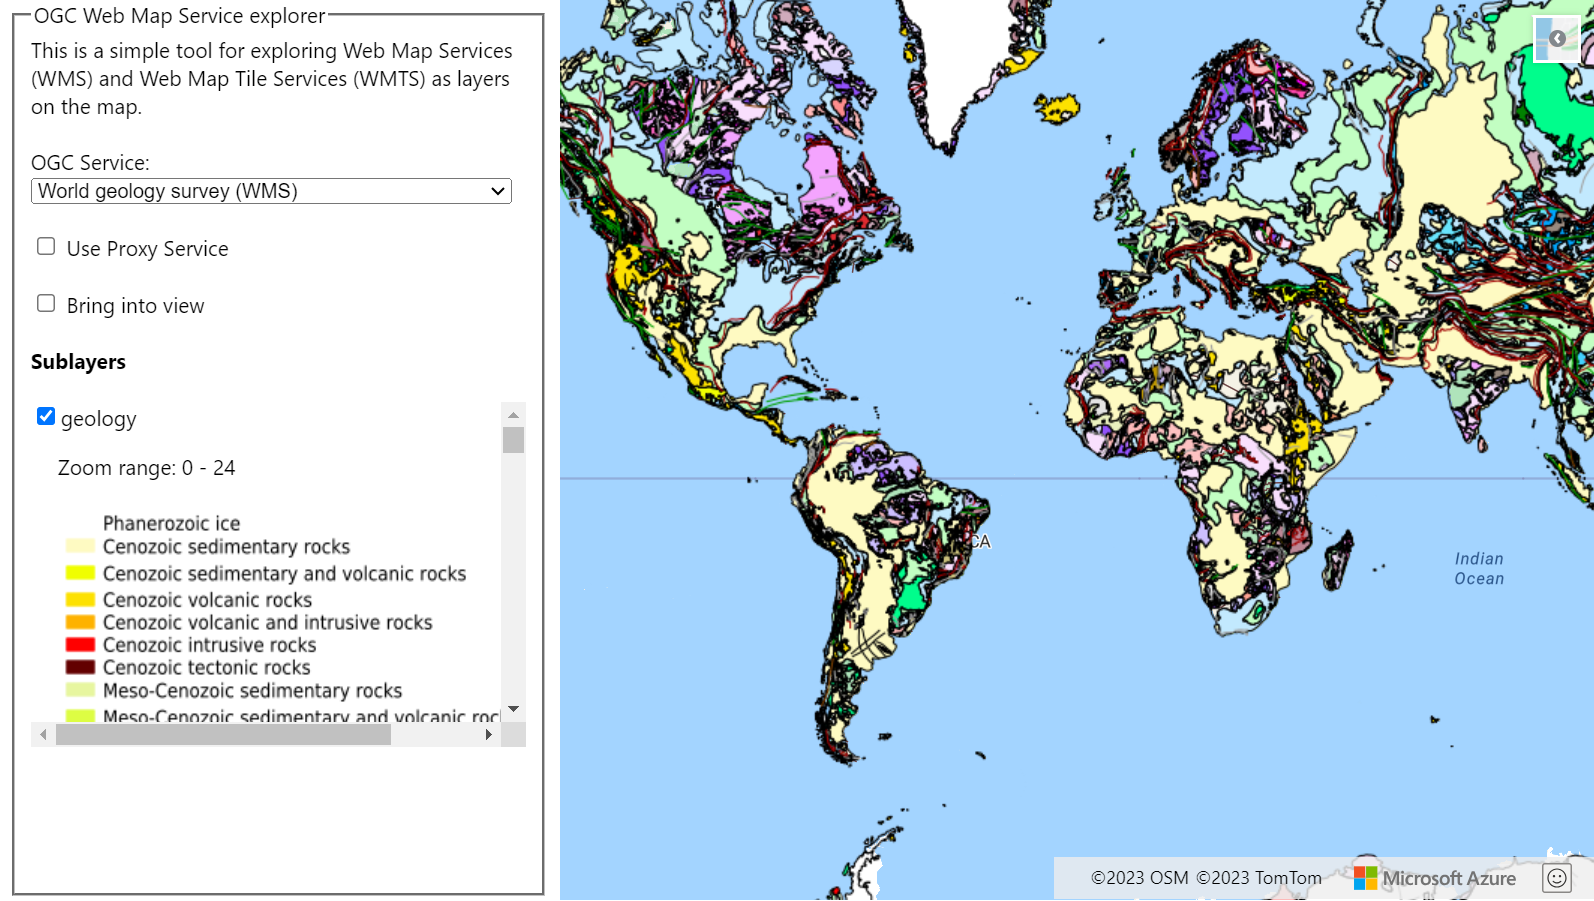 Képernyőkép a világ geológiai felméréséből származó WMTS-réteggel rendelkező térképről. A térkép bal oldalán egy legördülő lista látható, amely a kijelölhető OGC-szolgáltatásokat mutatja.